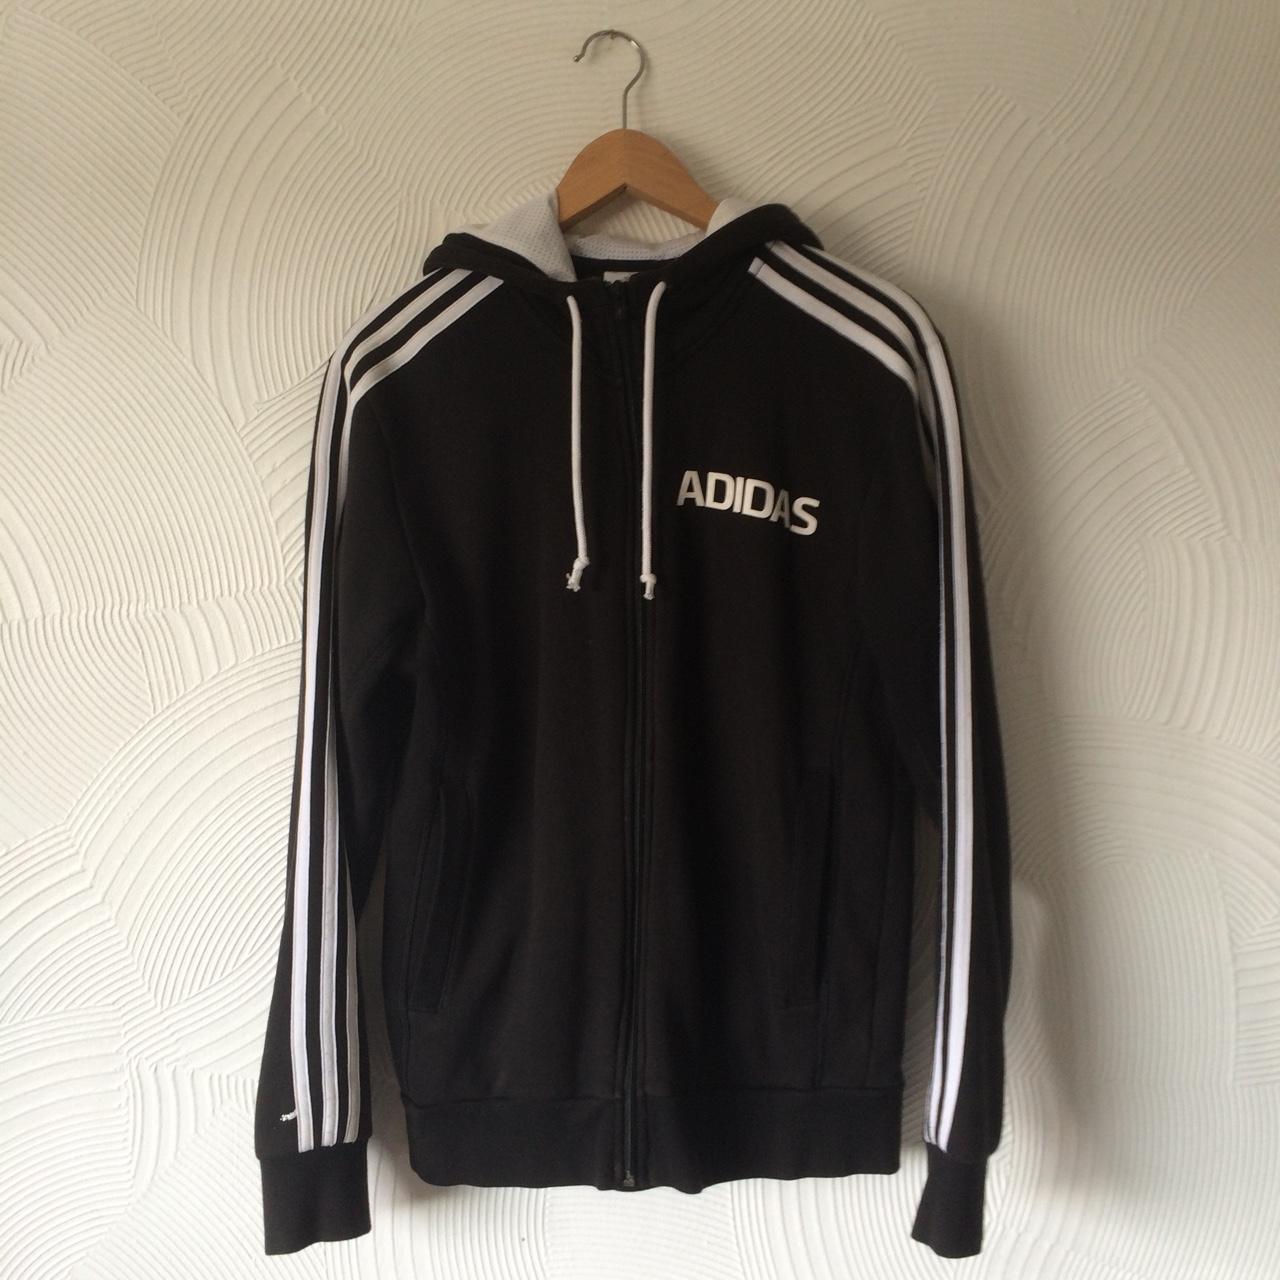 Adidas zip-up hoodie track jacket, vintage style,... - Depop